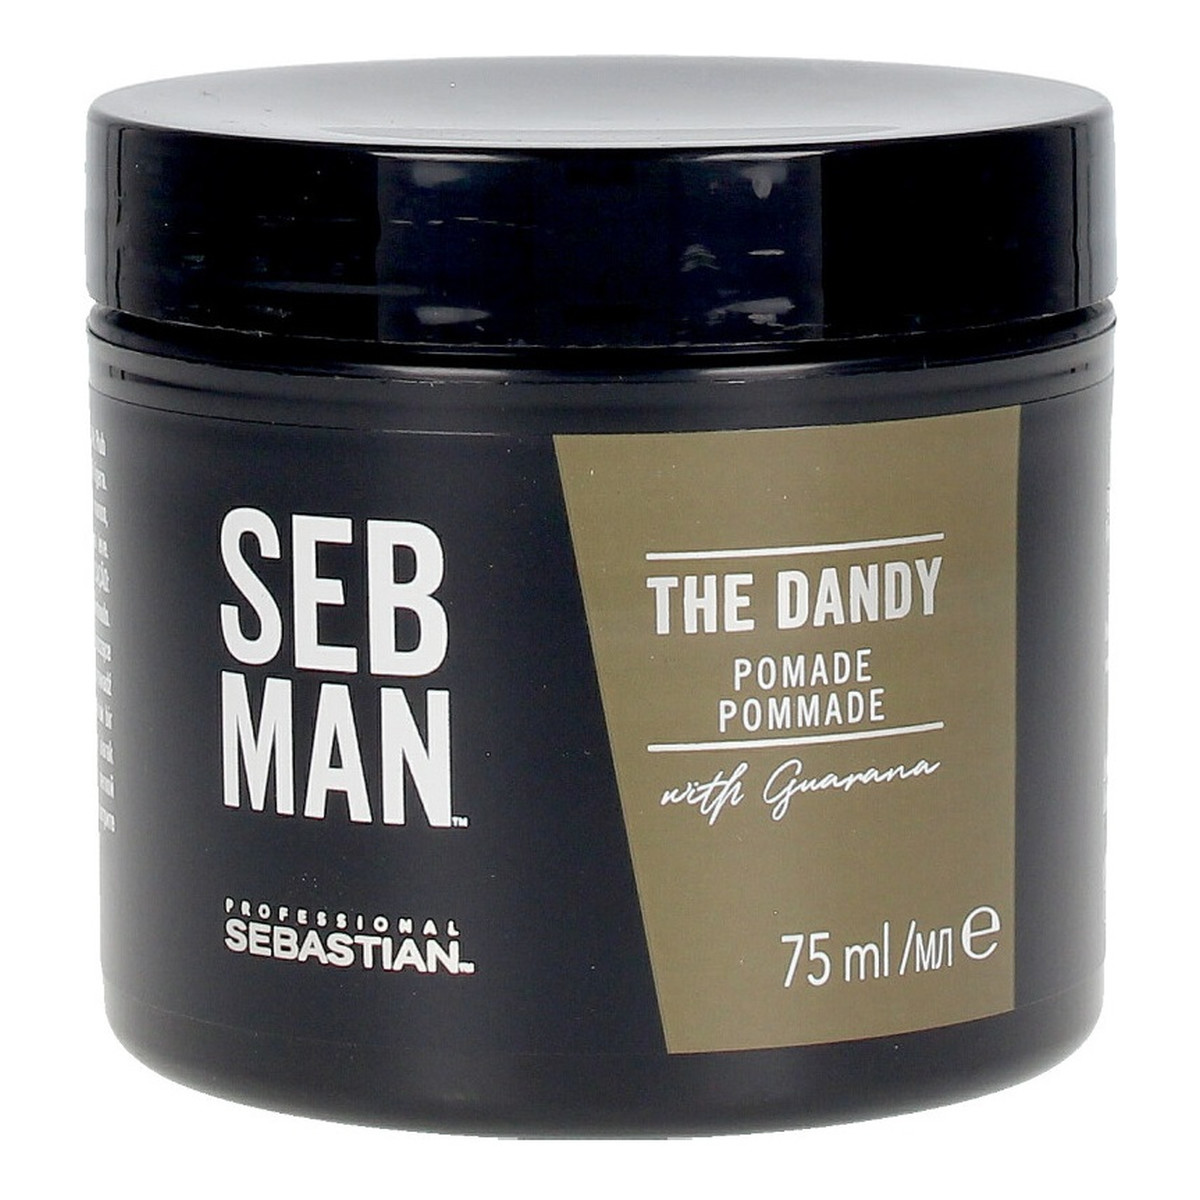 Sebastian Professional Seb Man The Dandy Pomade lekko utrwalająca pomada do włosów z połyskiem 75ml